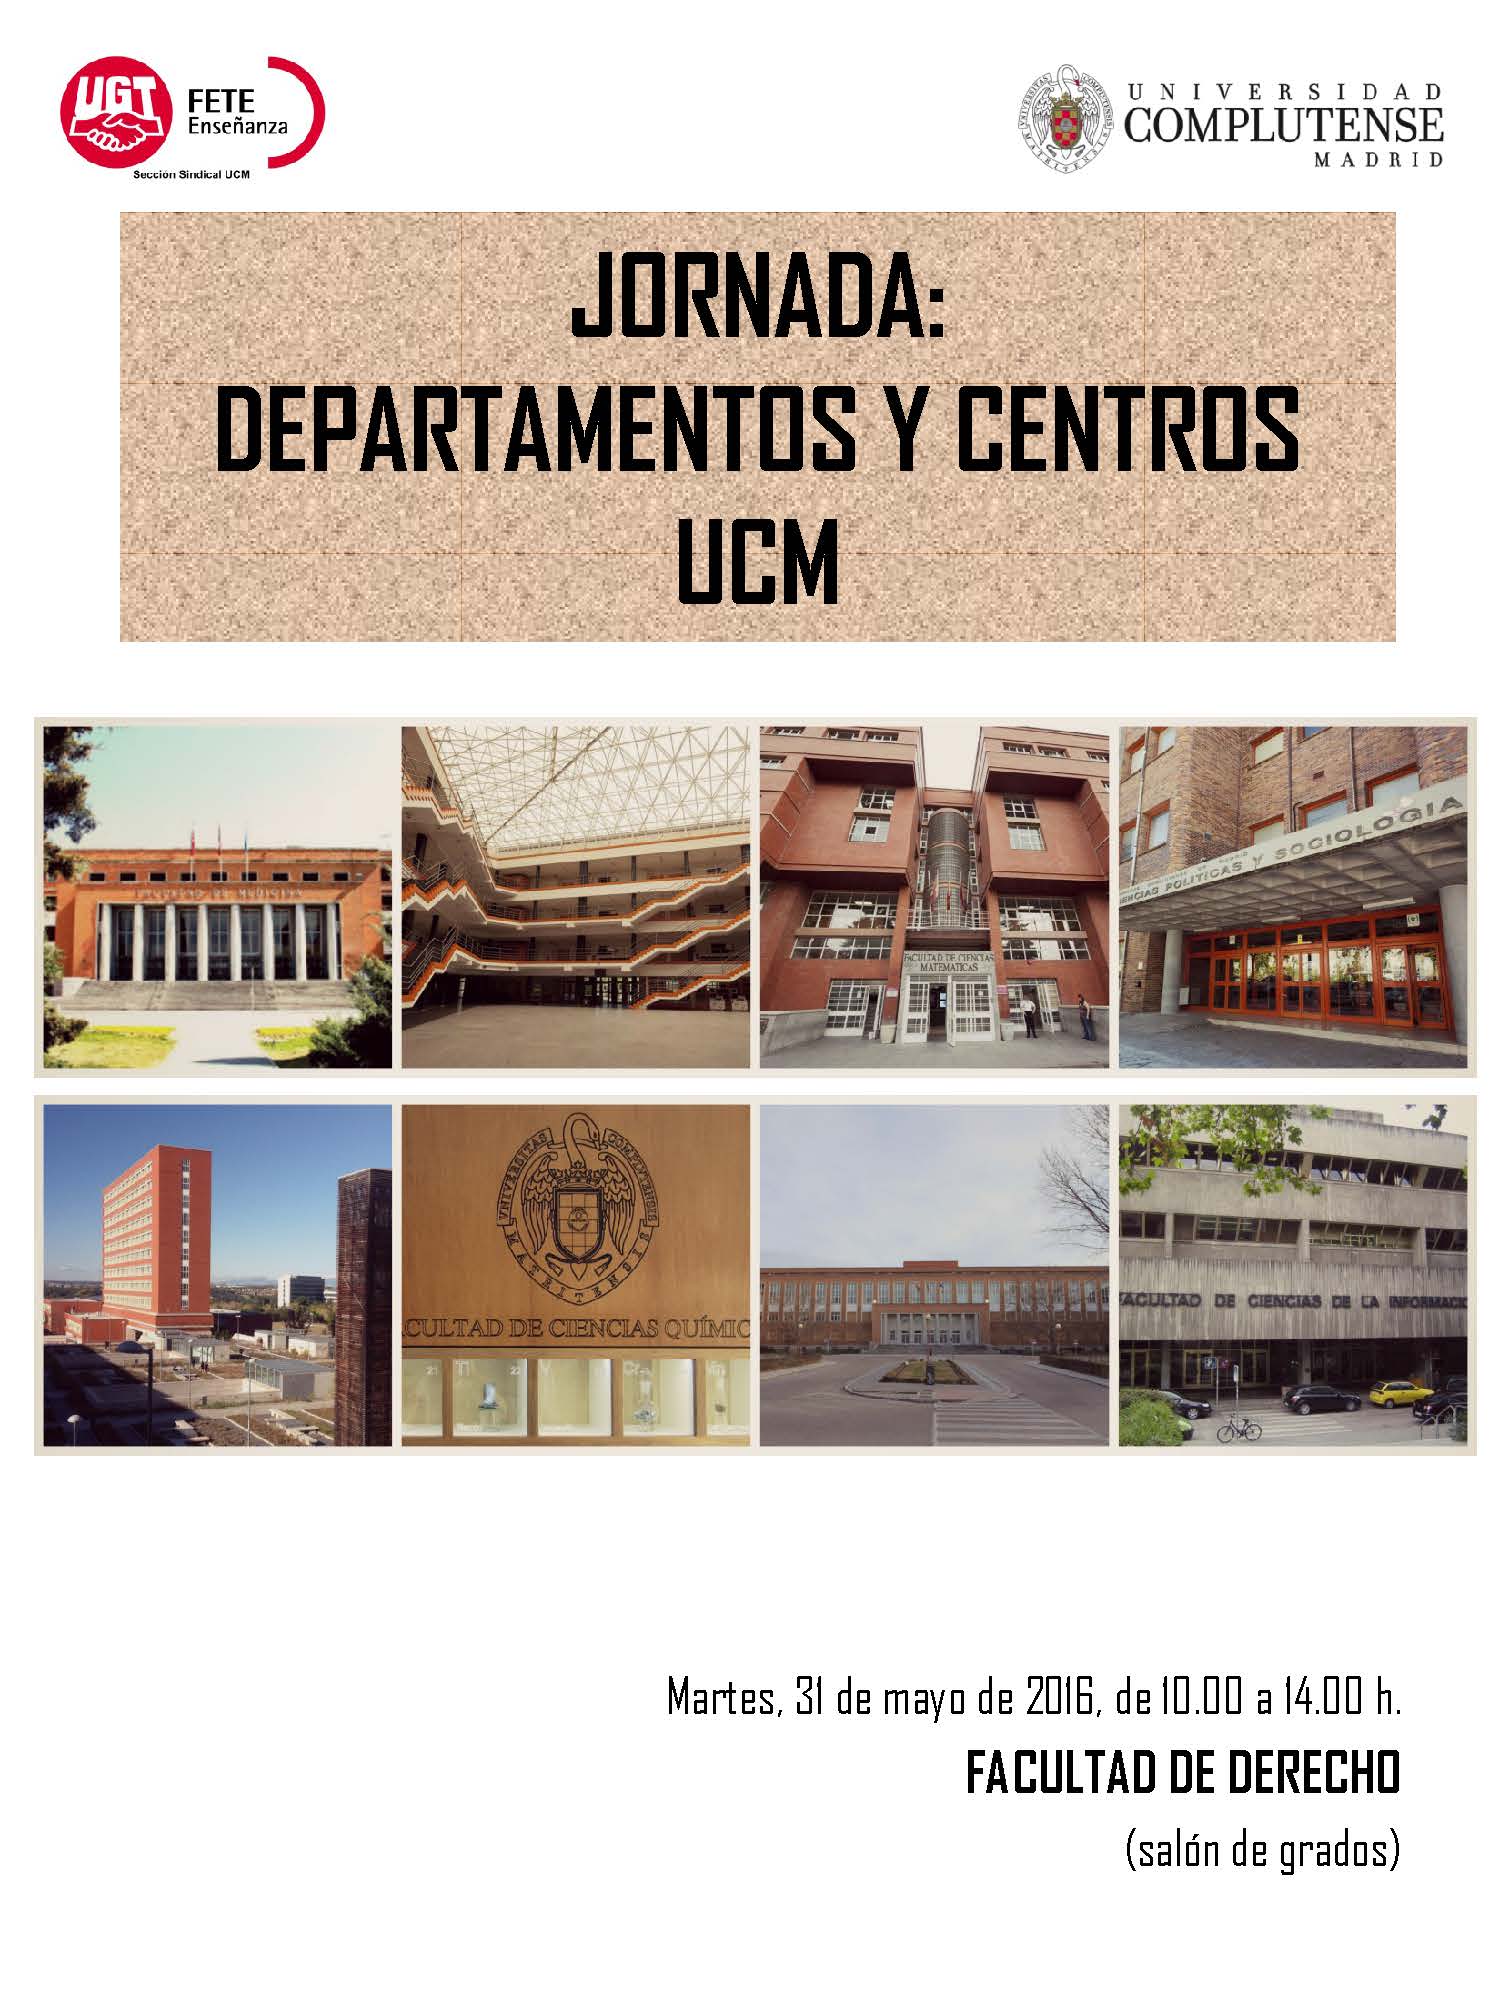 Jornada de debate sobre Departamentos y Centros. 31 mayo 2016, Facultad de Derecho UCM